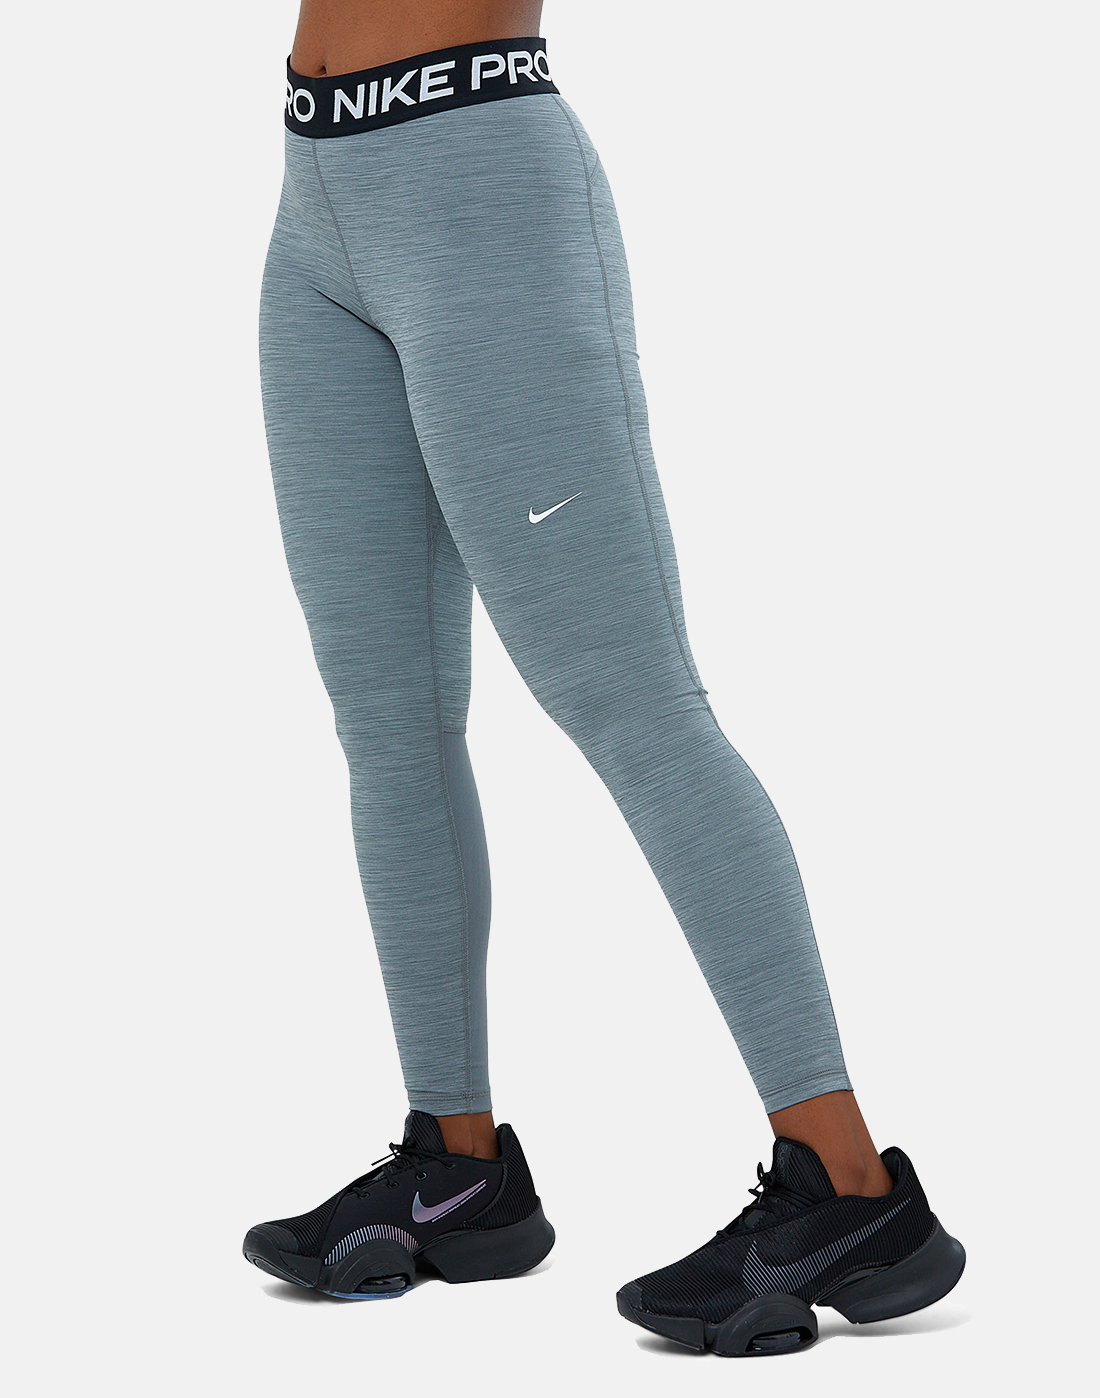 Nike Pro Women's Mid-Rise Leggings | Leggings